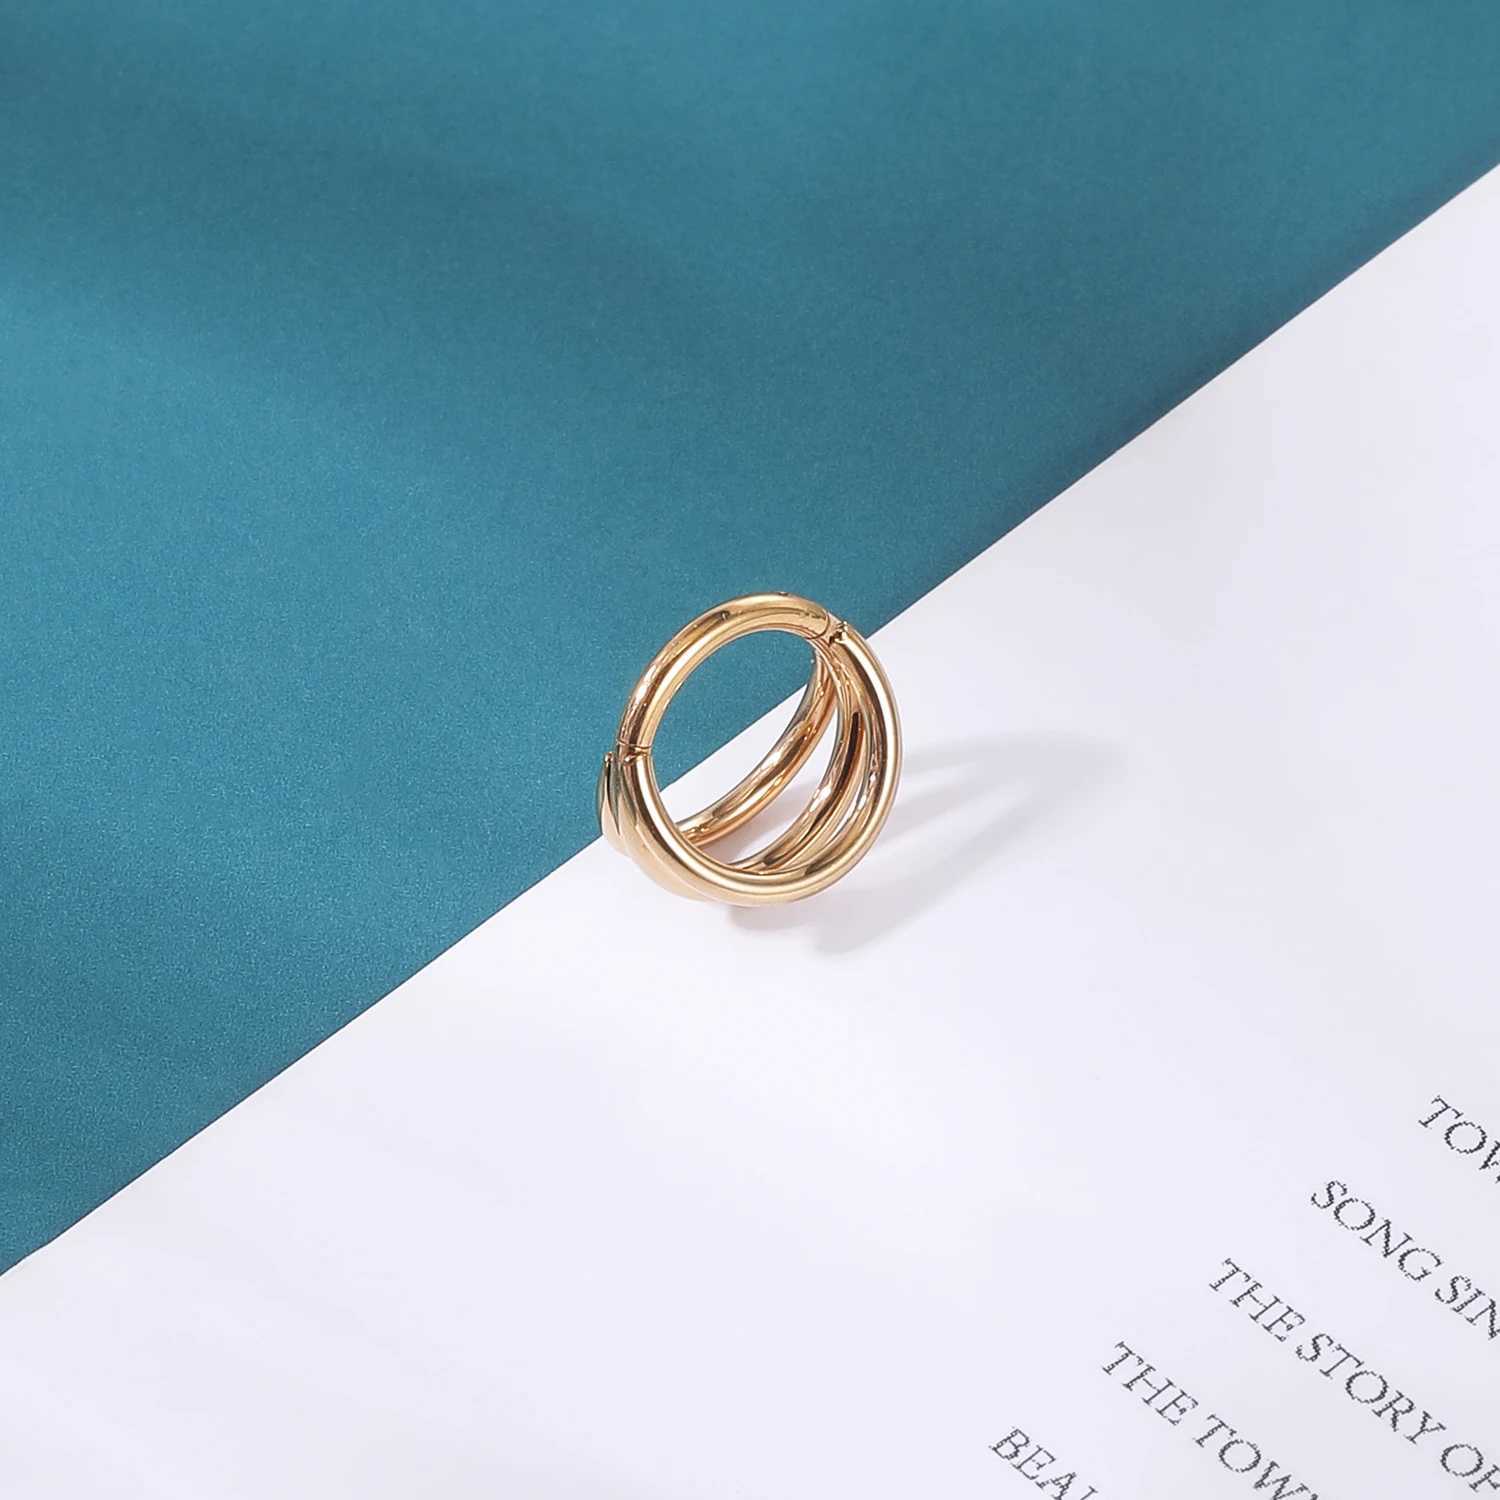 Поз как кольца Aoedej 14g Простой дизайн пупок кольцо кольцо Золотое цвет пупок Пирсинг из нержавеющей стали.